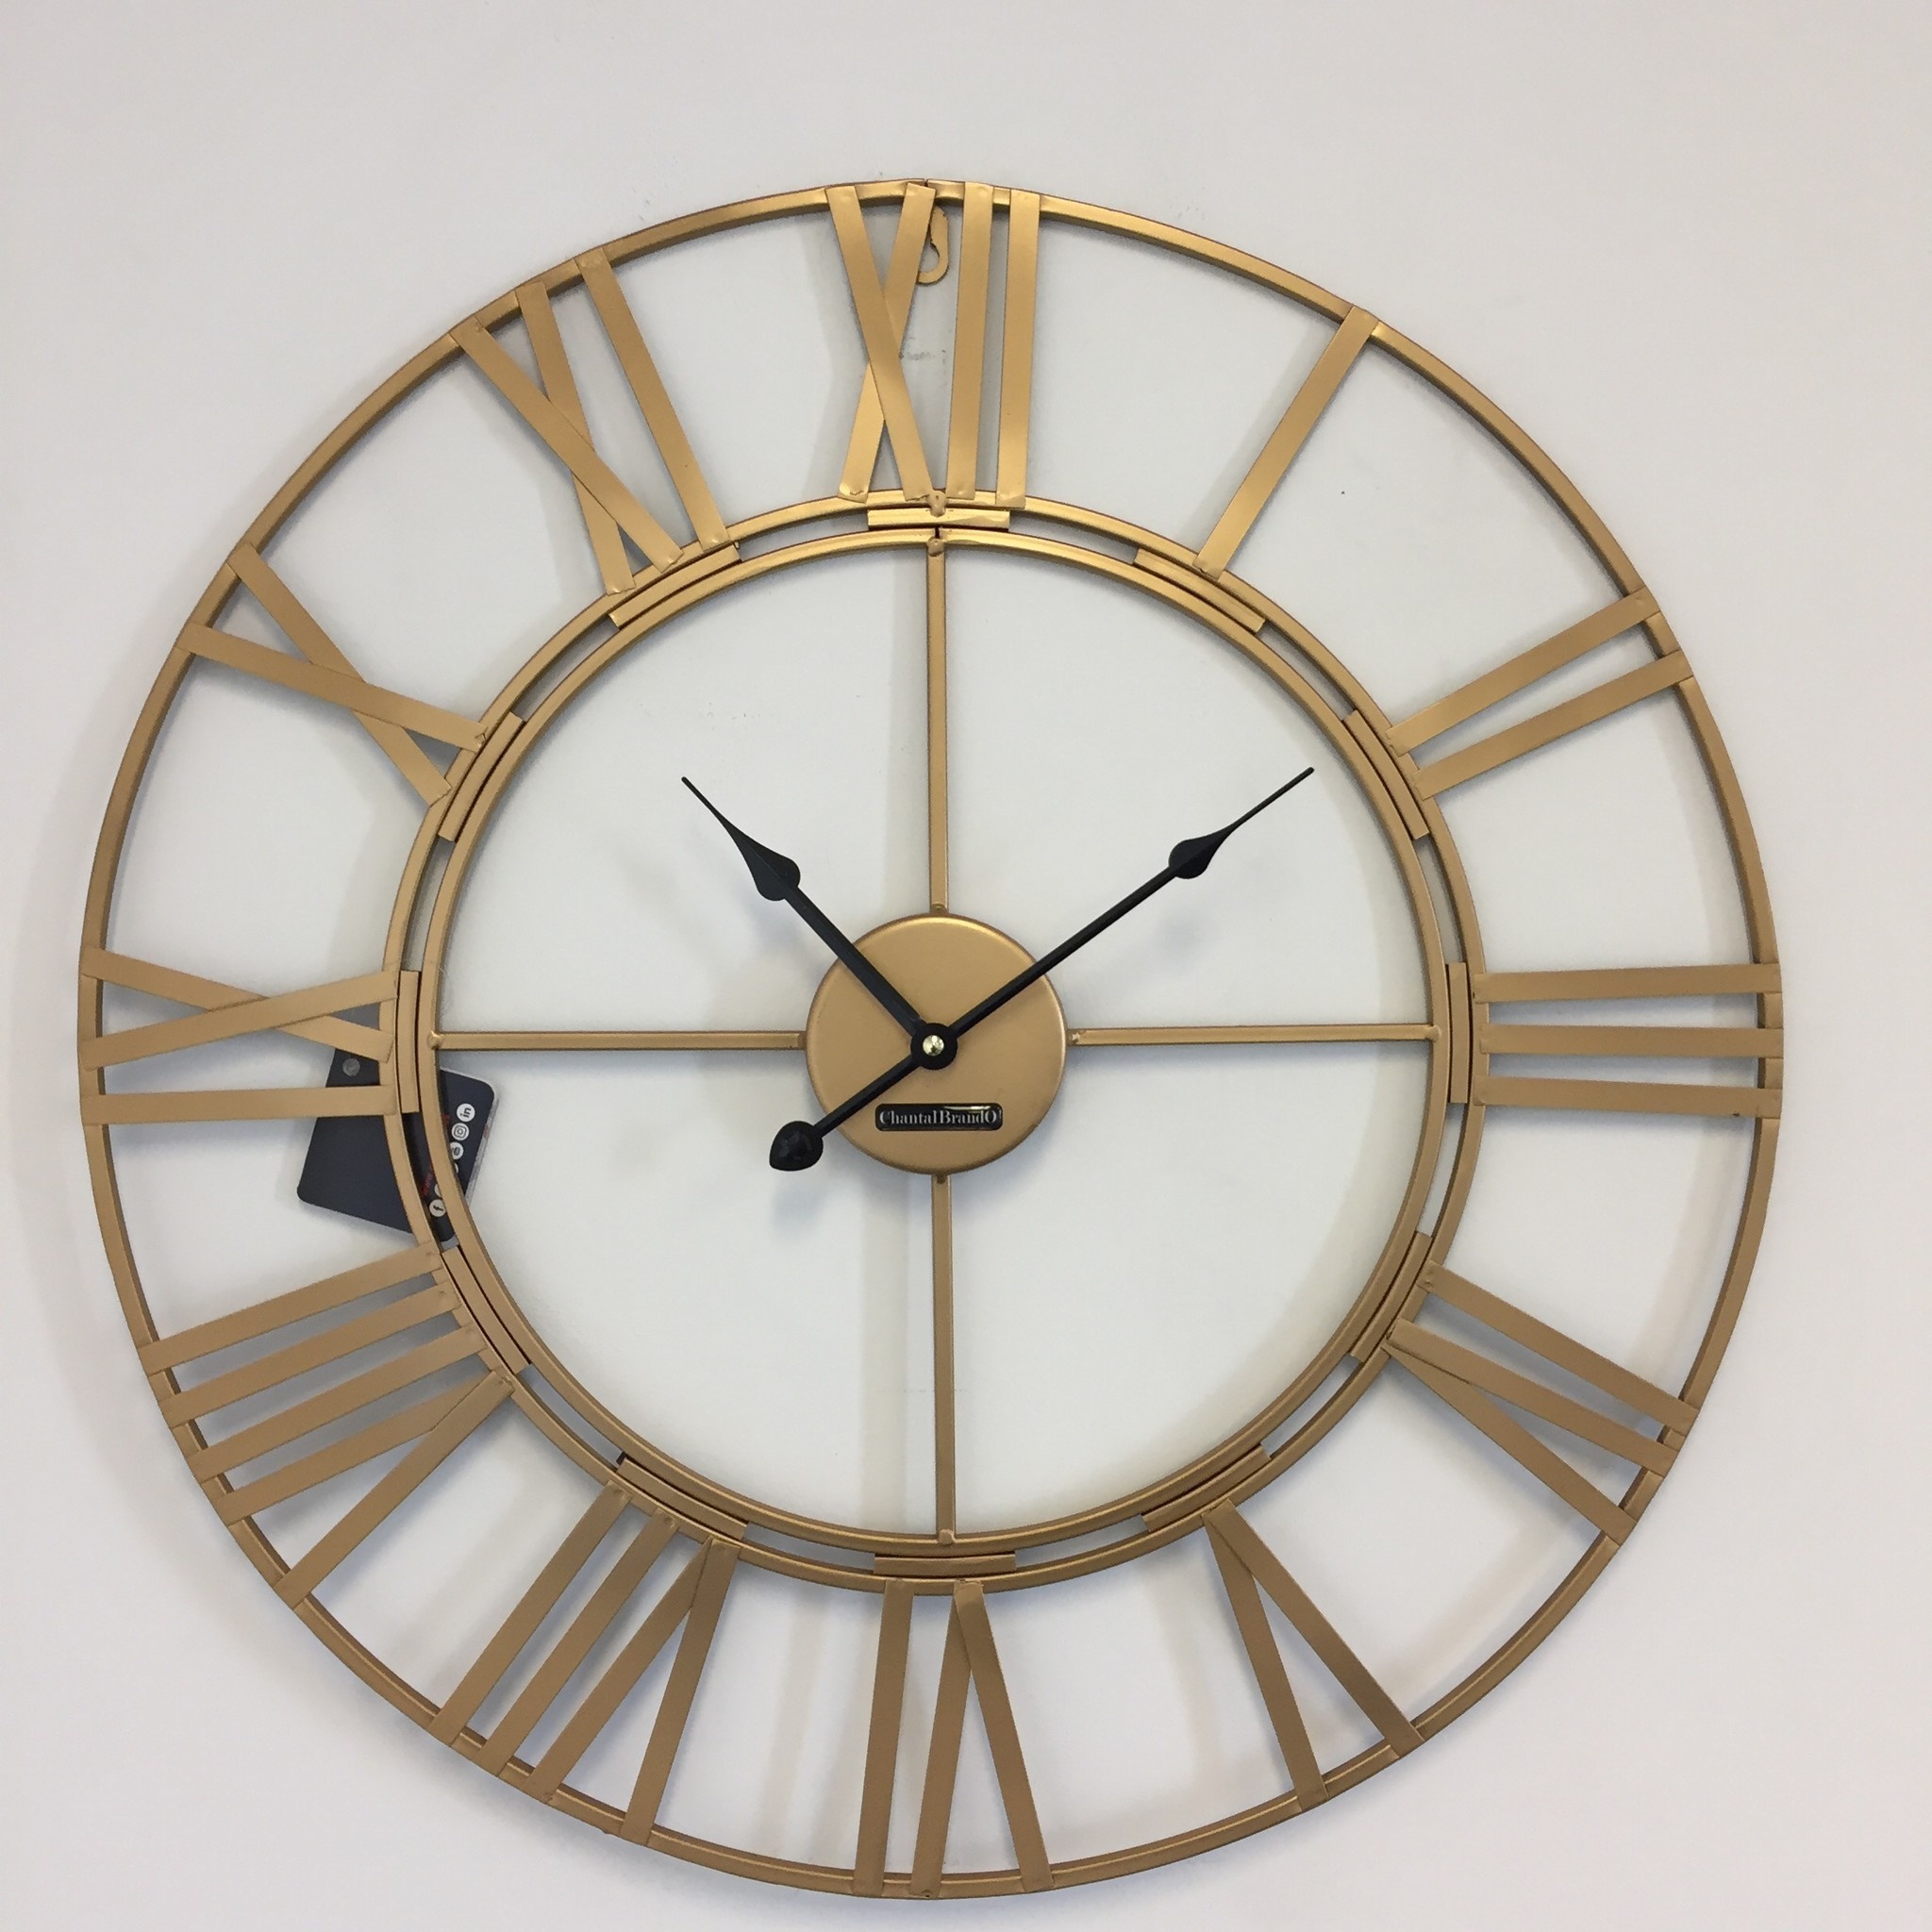 Klokkendiscounter Design - Wall clock Golden Wheel 60 Industrial Retro Design